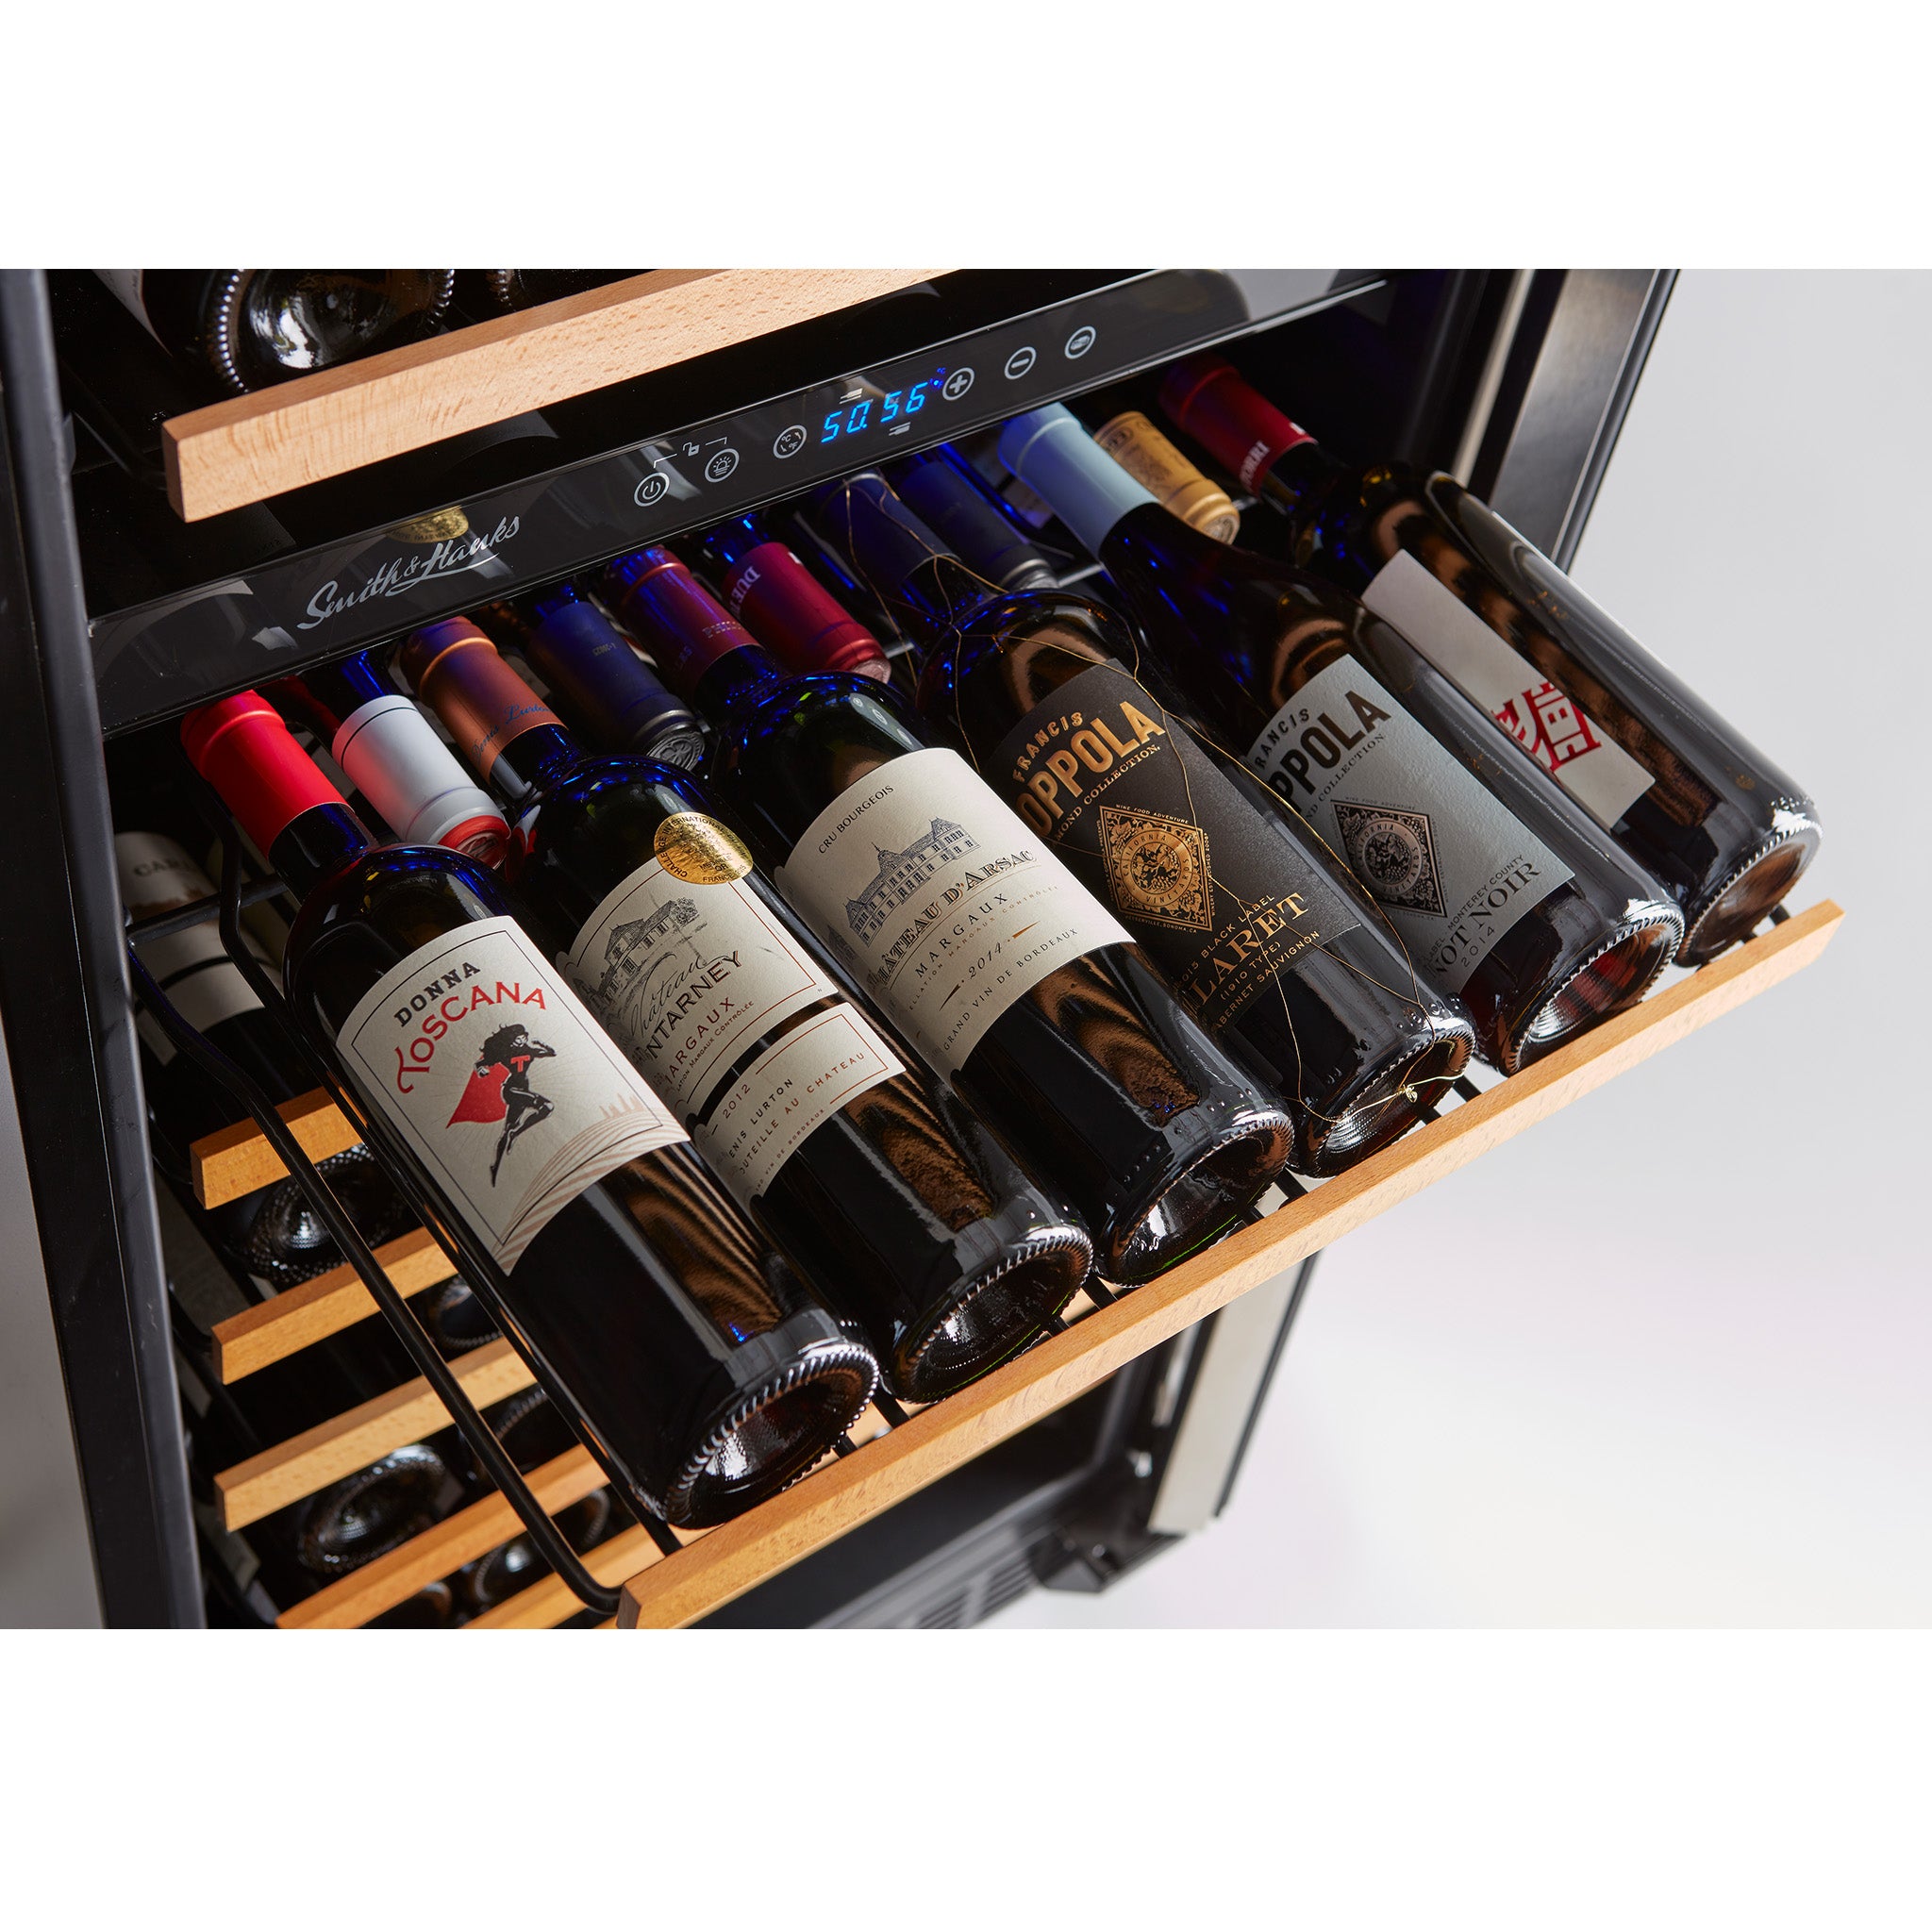 Smith & Hanks - 24" 166-Bottle Dual-Zone Wine Cooler Stainless Steel Trim Glass Door (RE100004)